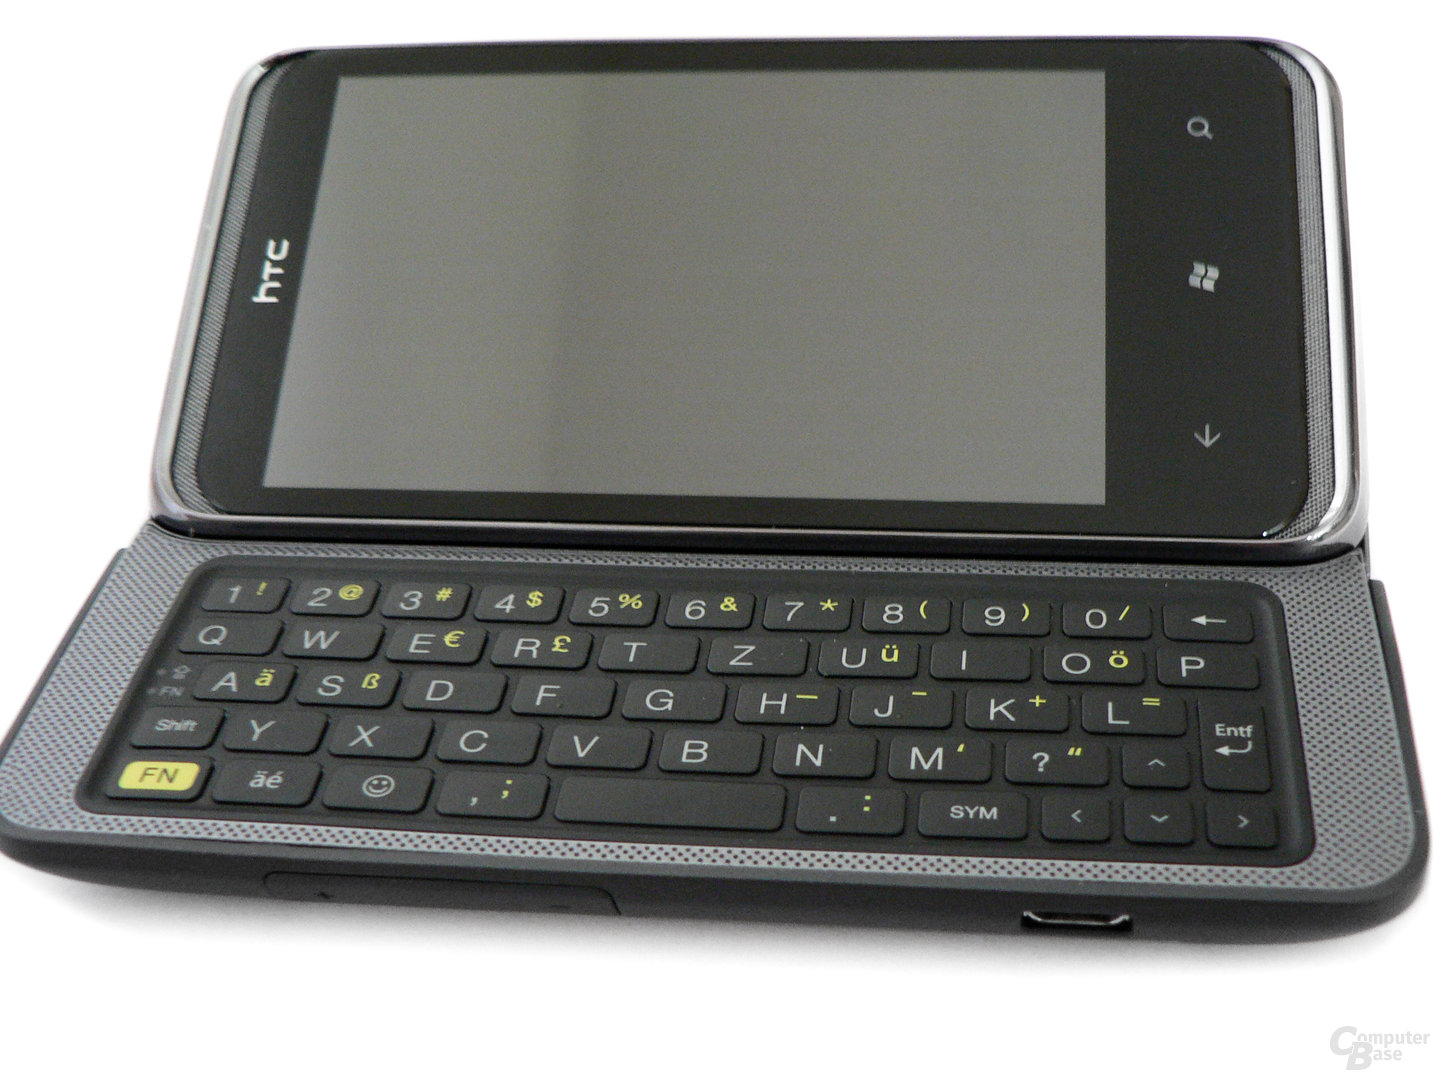 Kann sich sehen lassen: Die Tastatur des HTC 7 Pro